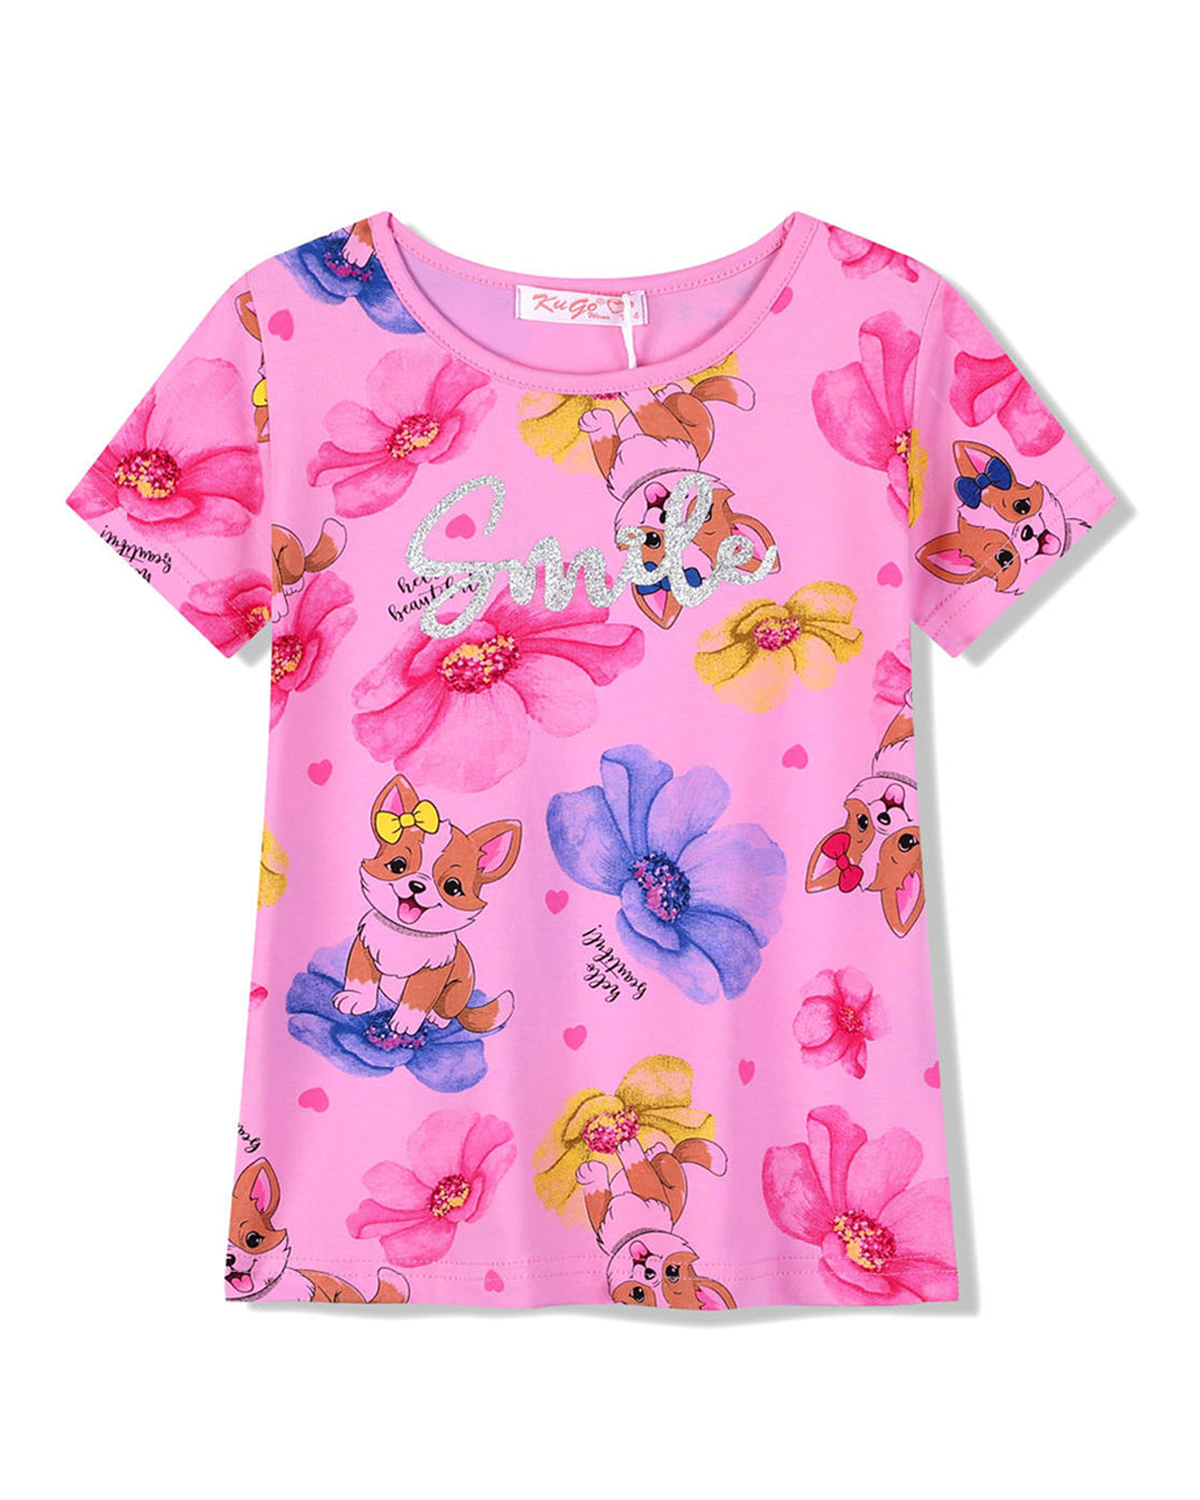 Dívčí tričko - KUGO FC1059, růžová Barva: Růžová, Velikost: 116